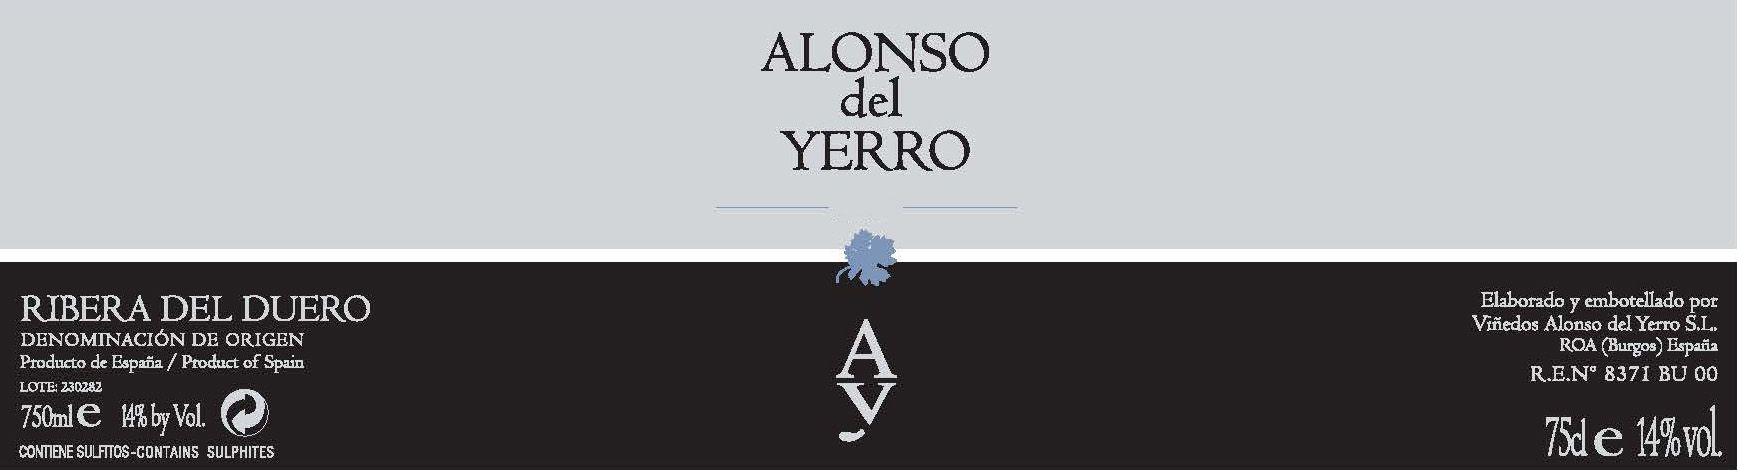 Alonso del Yerro label